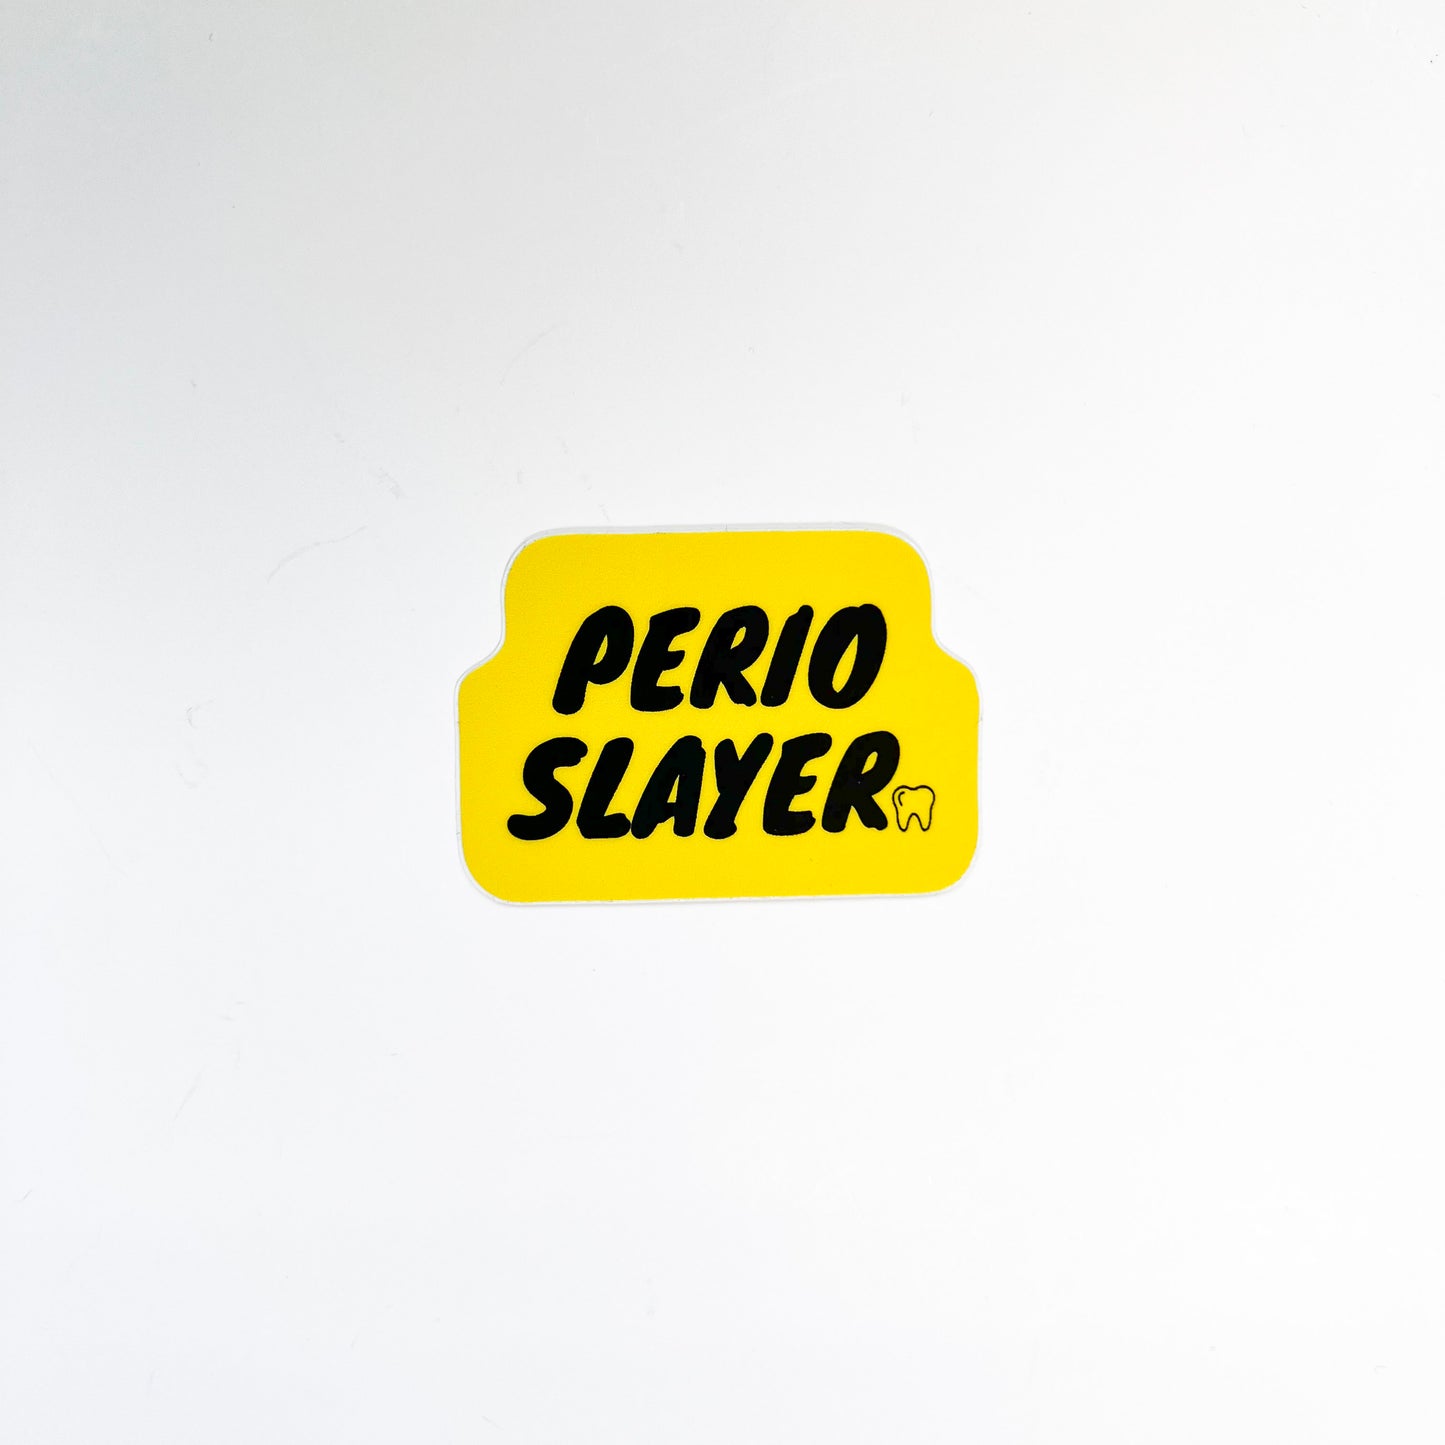 New Perio Slayer Sticker